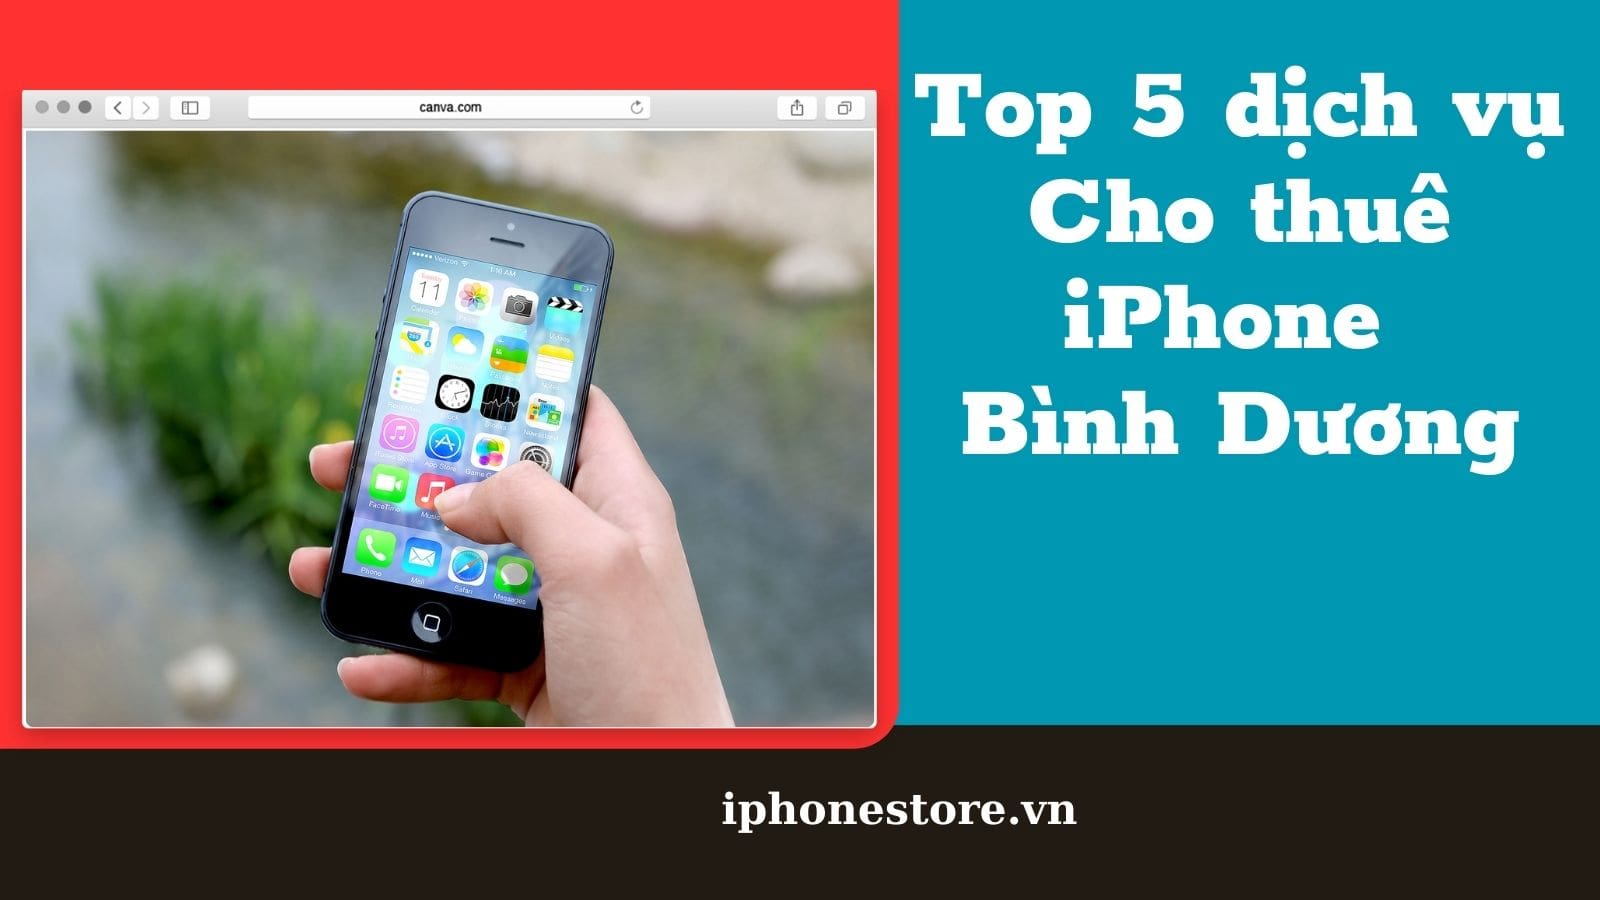 Top 5 dịch vụ Cho thuê iPhone Bình Dương